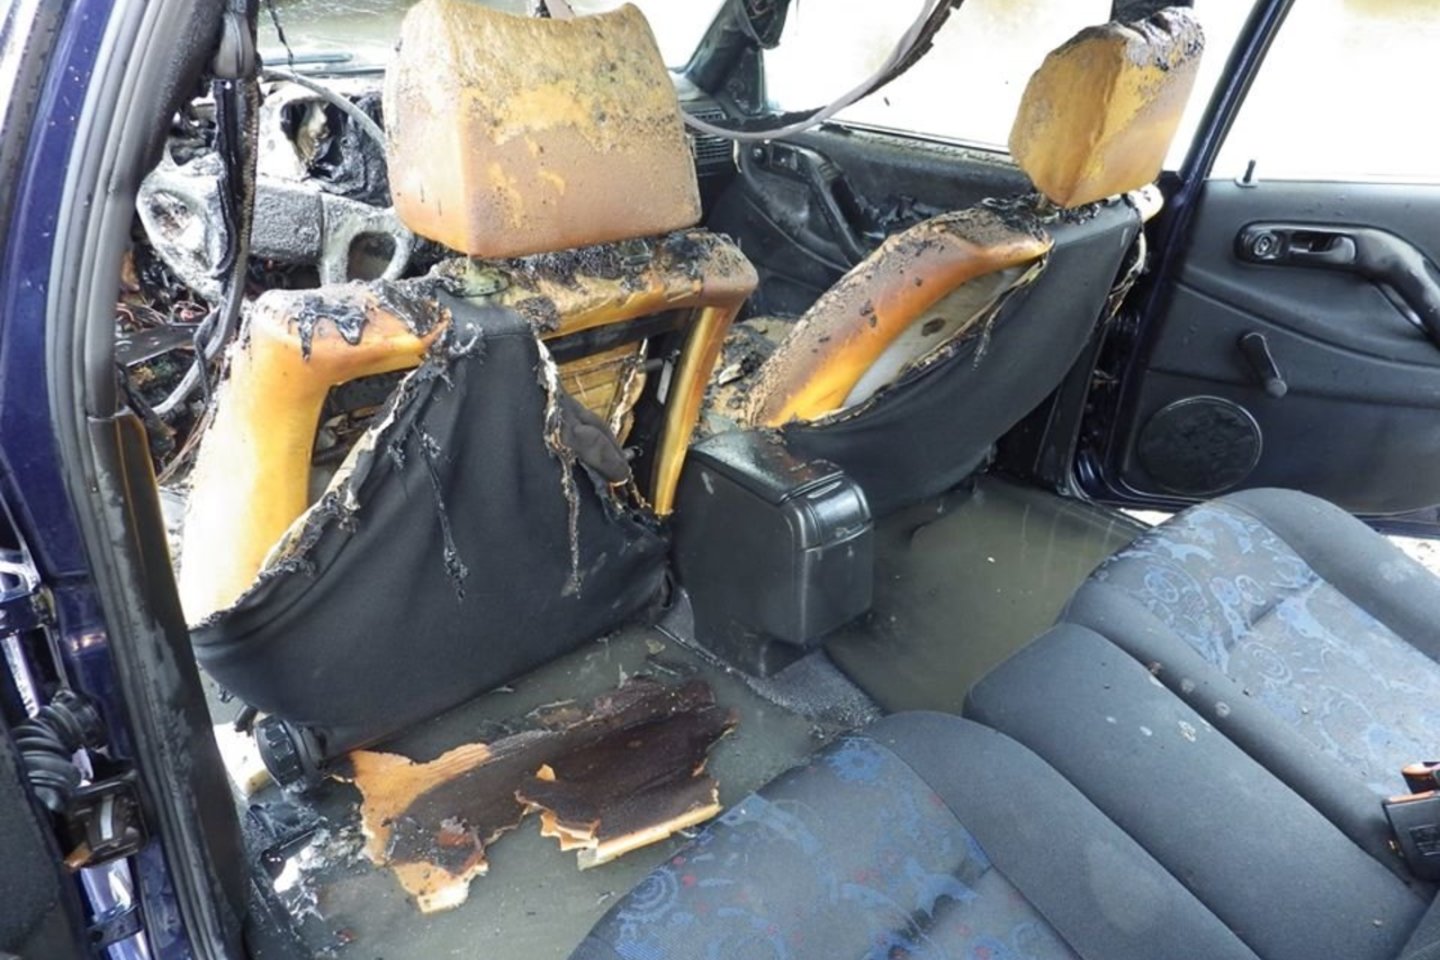  Molėtuose degė „VW Passat“, ugniagesiai perspėja, kad gesintuvas automobiliuose būtinas.<br> Facebook/Molėtų priešgaisrinė gelbėjimo tarnyba nuotr.